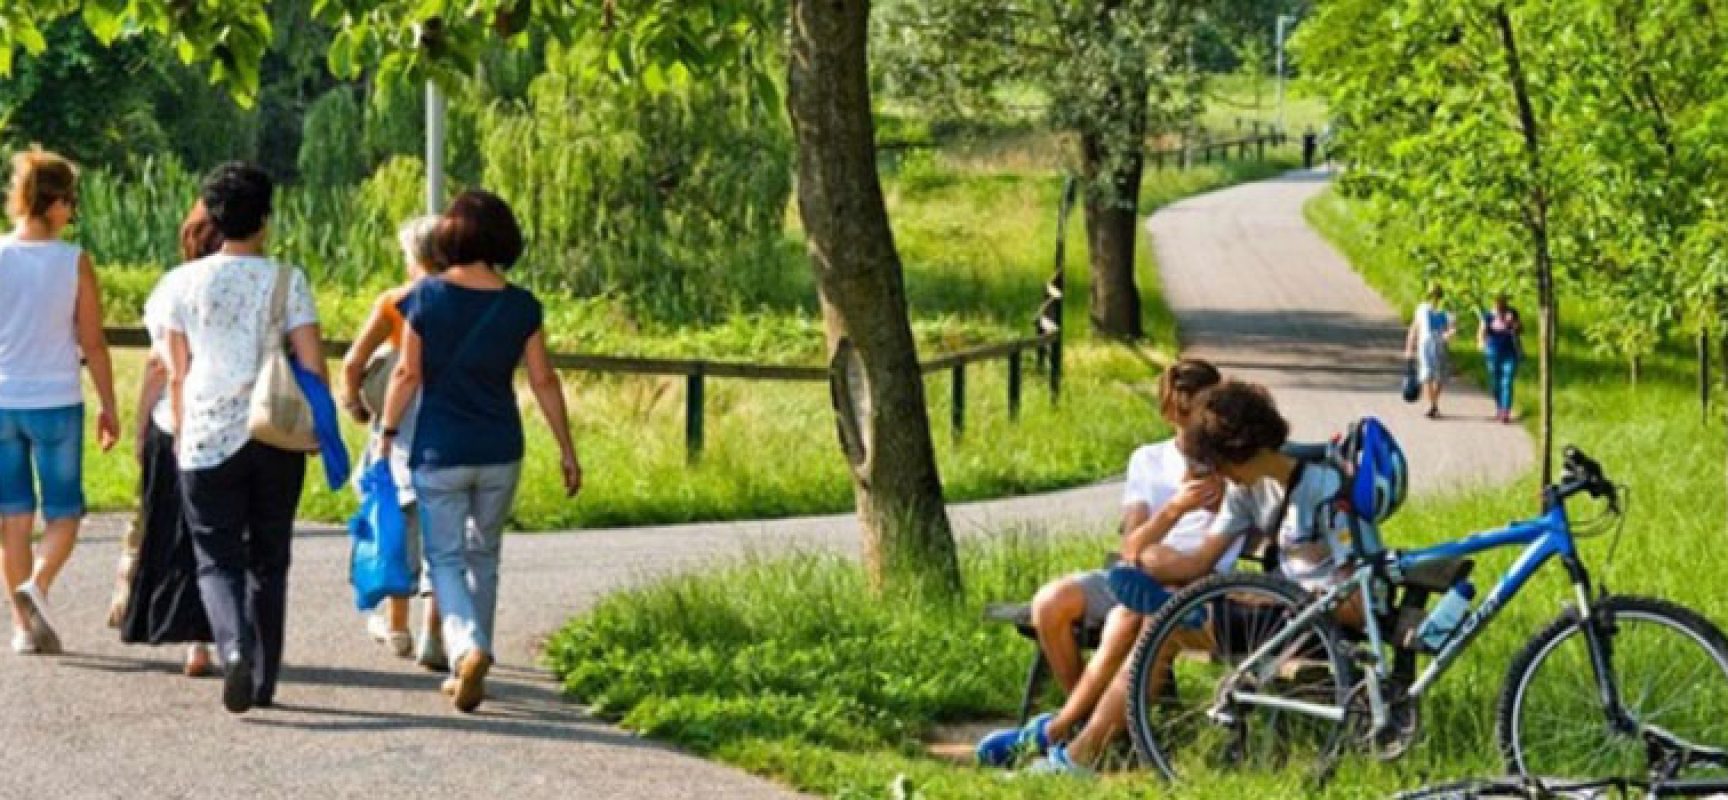 Bisceglie Illuminata promuove passeggiata assieme a ragazzi con disabilità